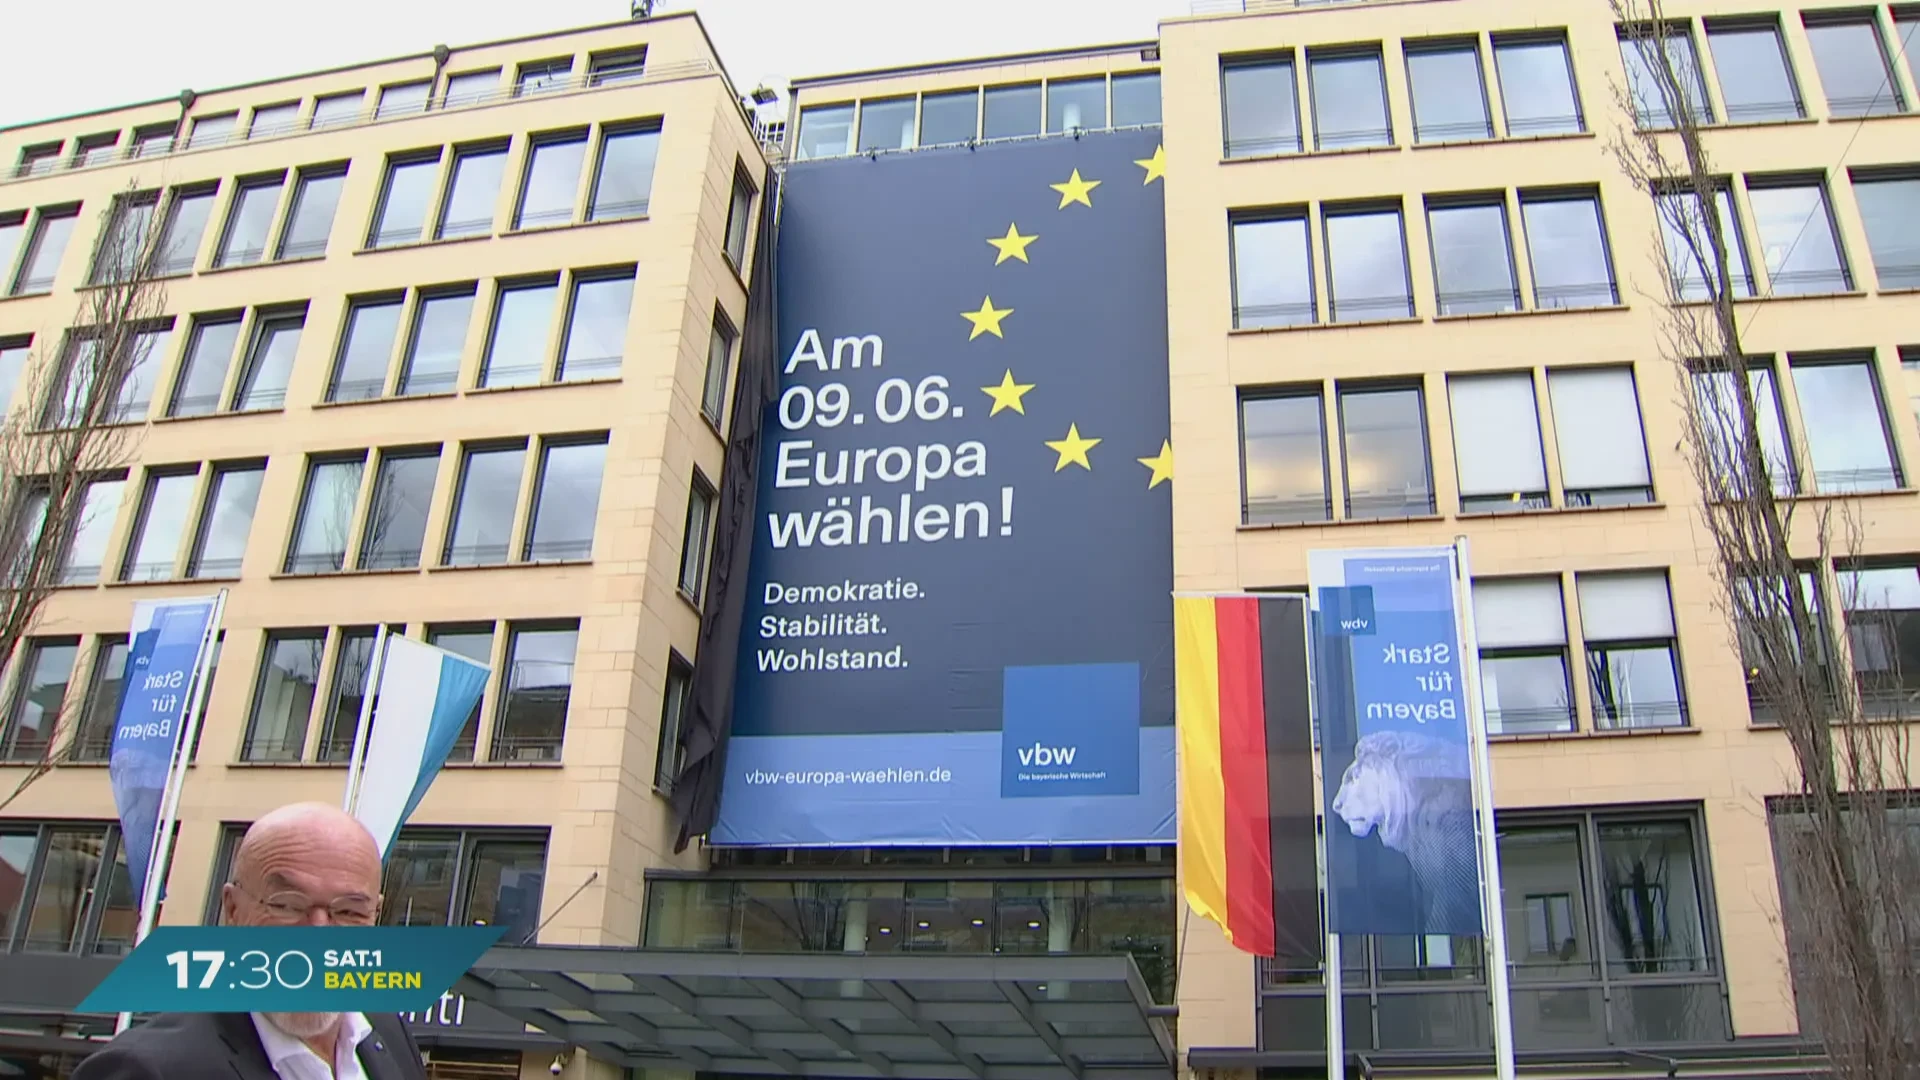 Business in Baviera: svelato lo striscione per le elezioni europee